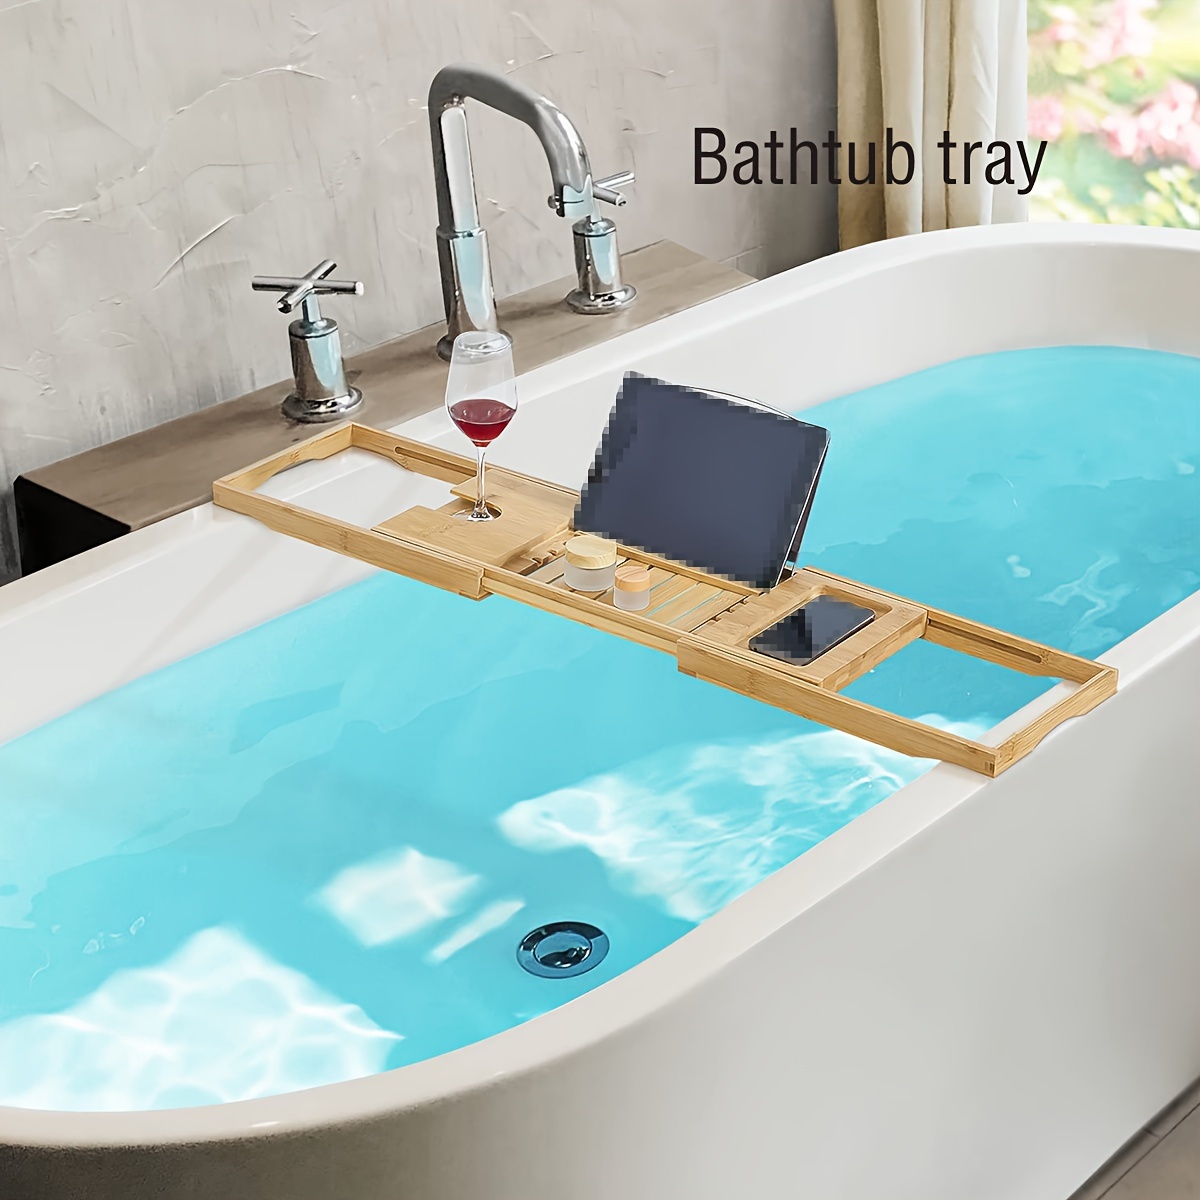  EcoFives Teak Bathtub Tray Caddy - Expandable Bath Tray -  Adjustable Organizer Tray for Bathroom - Luxury Bath Caddy Tub Table,  Bathtub Accessories & Bathroom Gadgets : Home & Kitchen